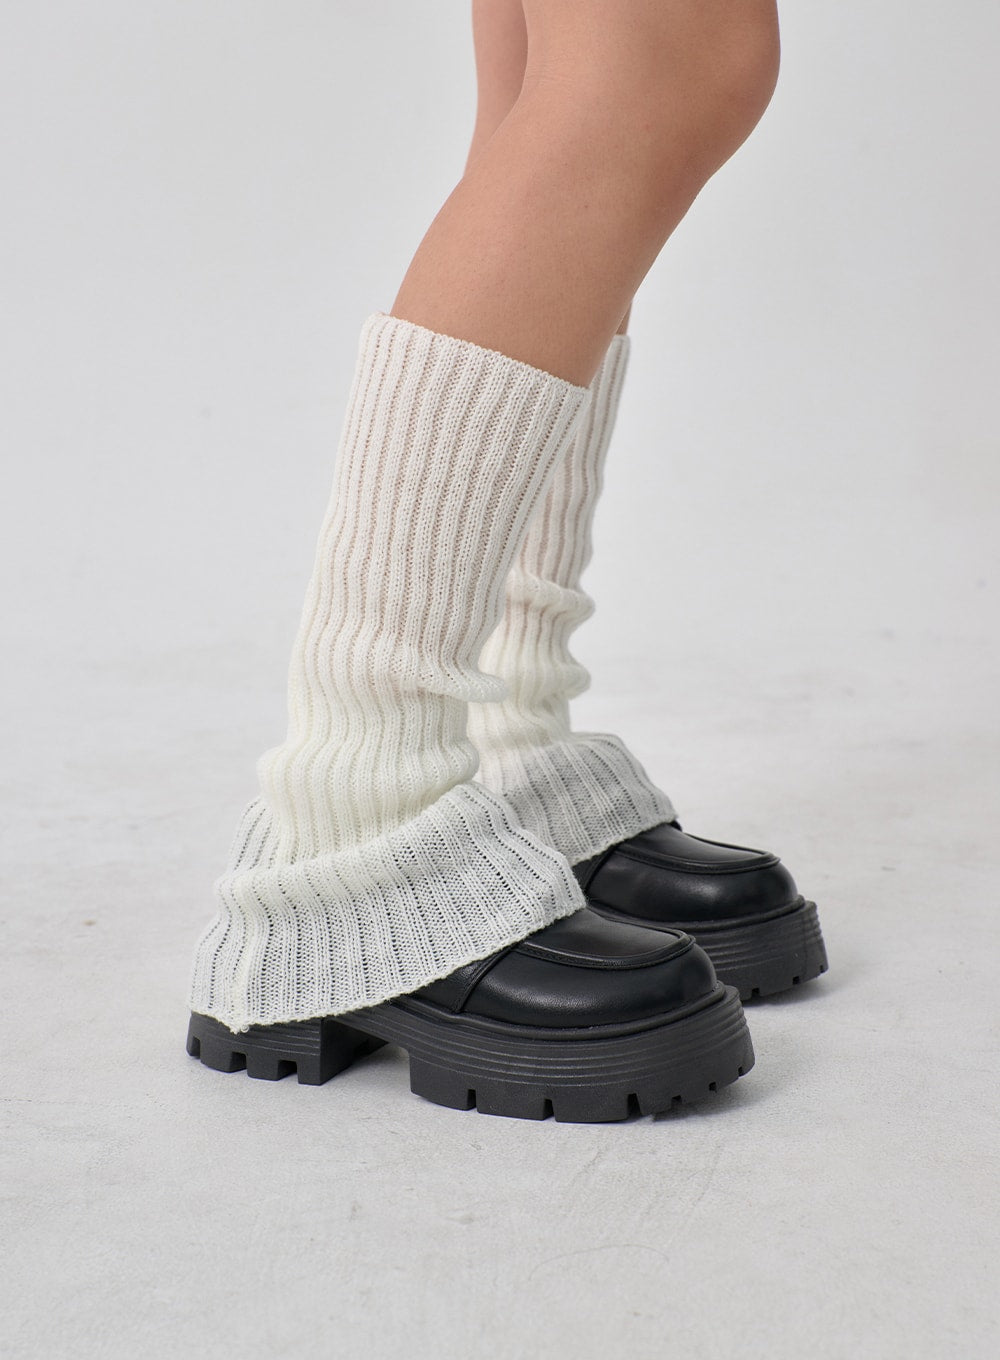 Women's Leg Warmer Leg Warmers Legwarmers Leg Warmers Knitted Leg Warmers  Socks White